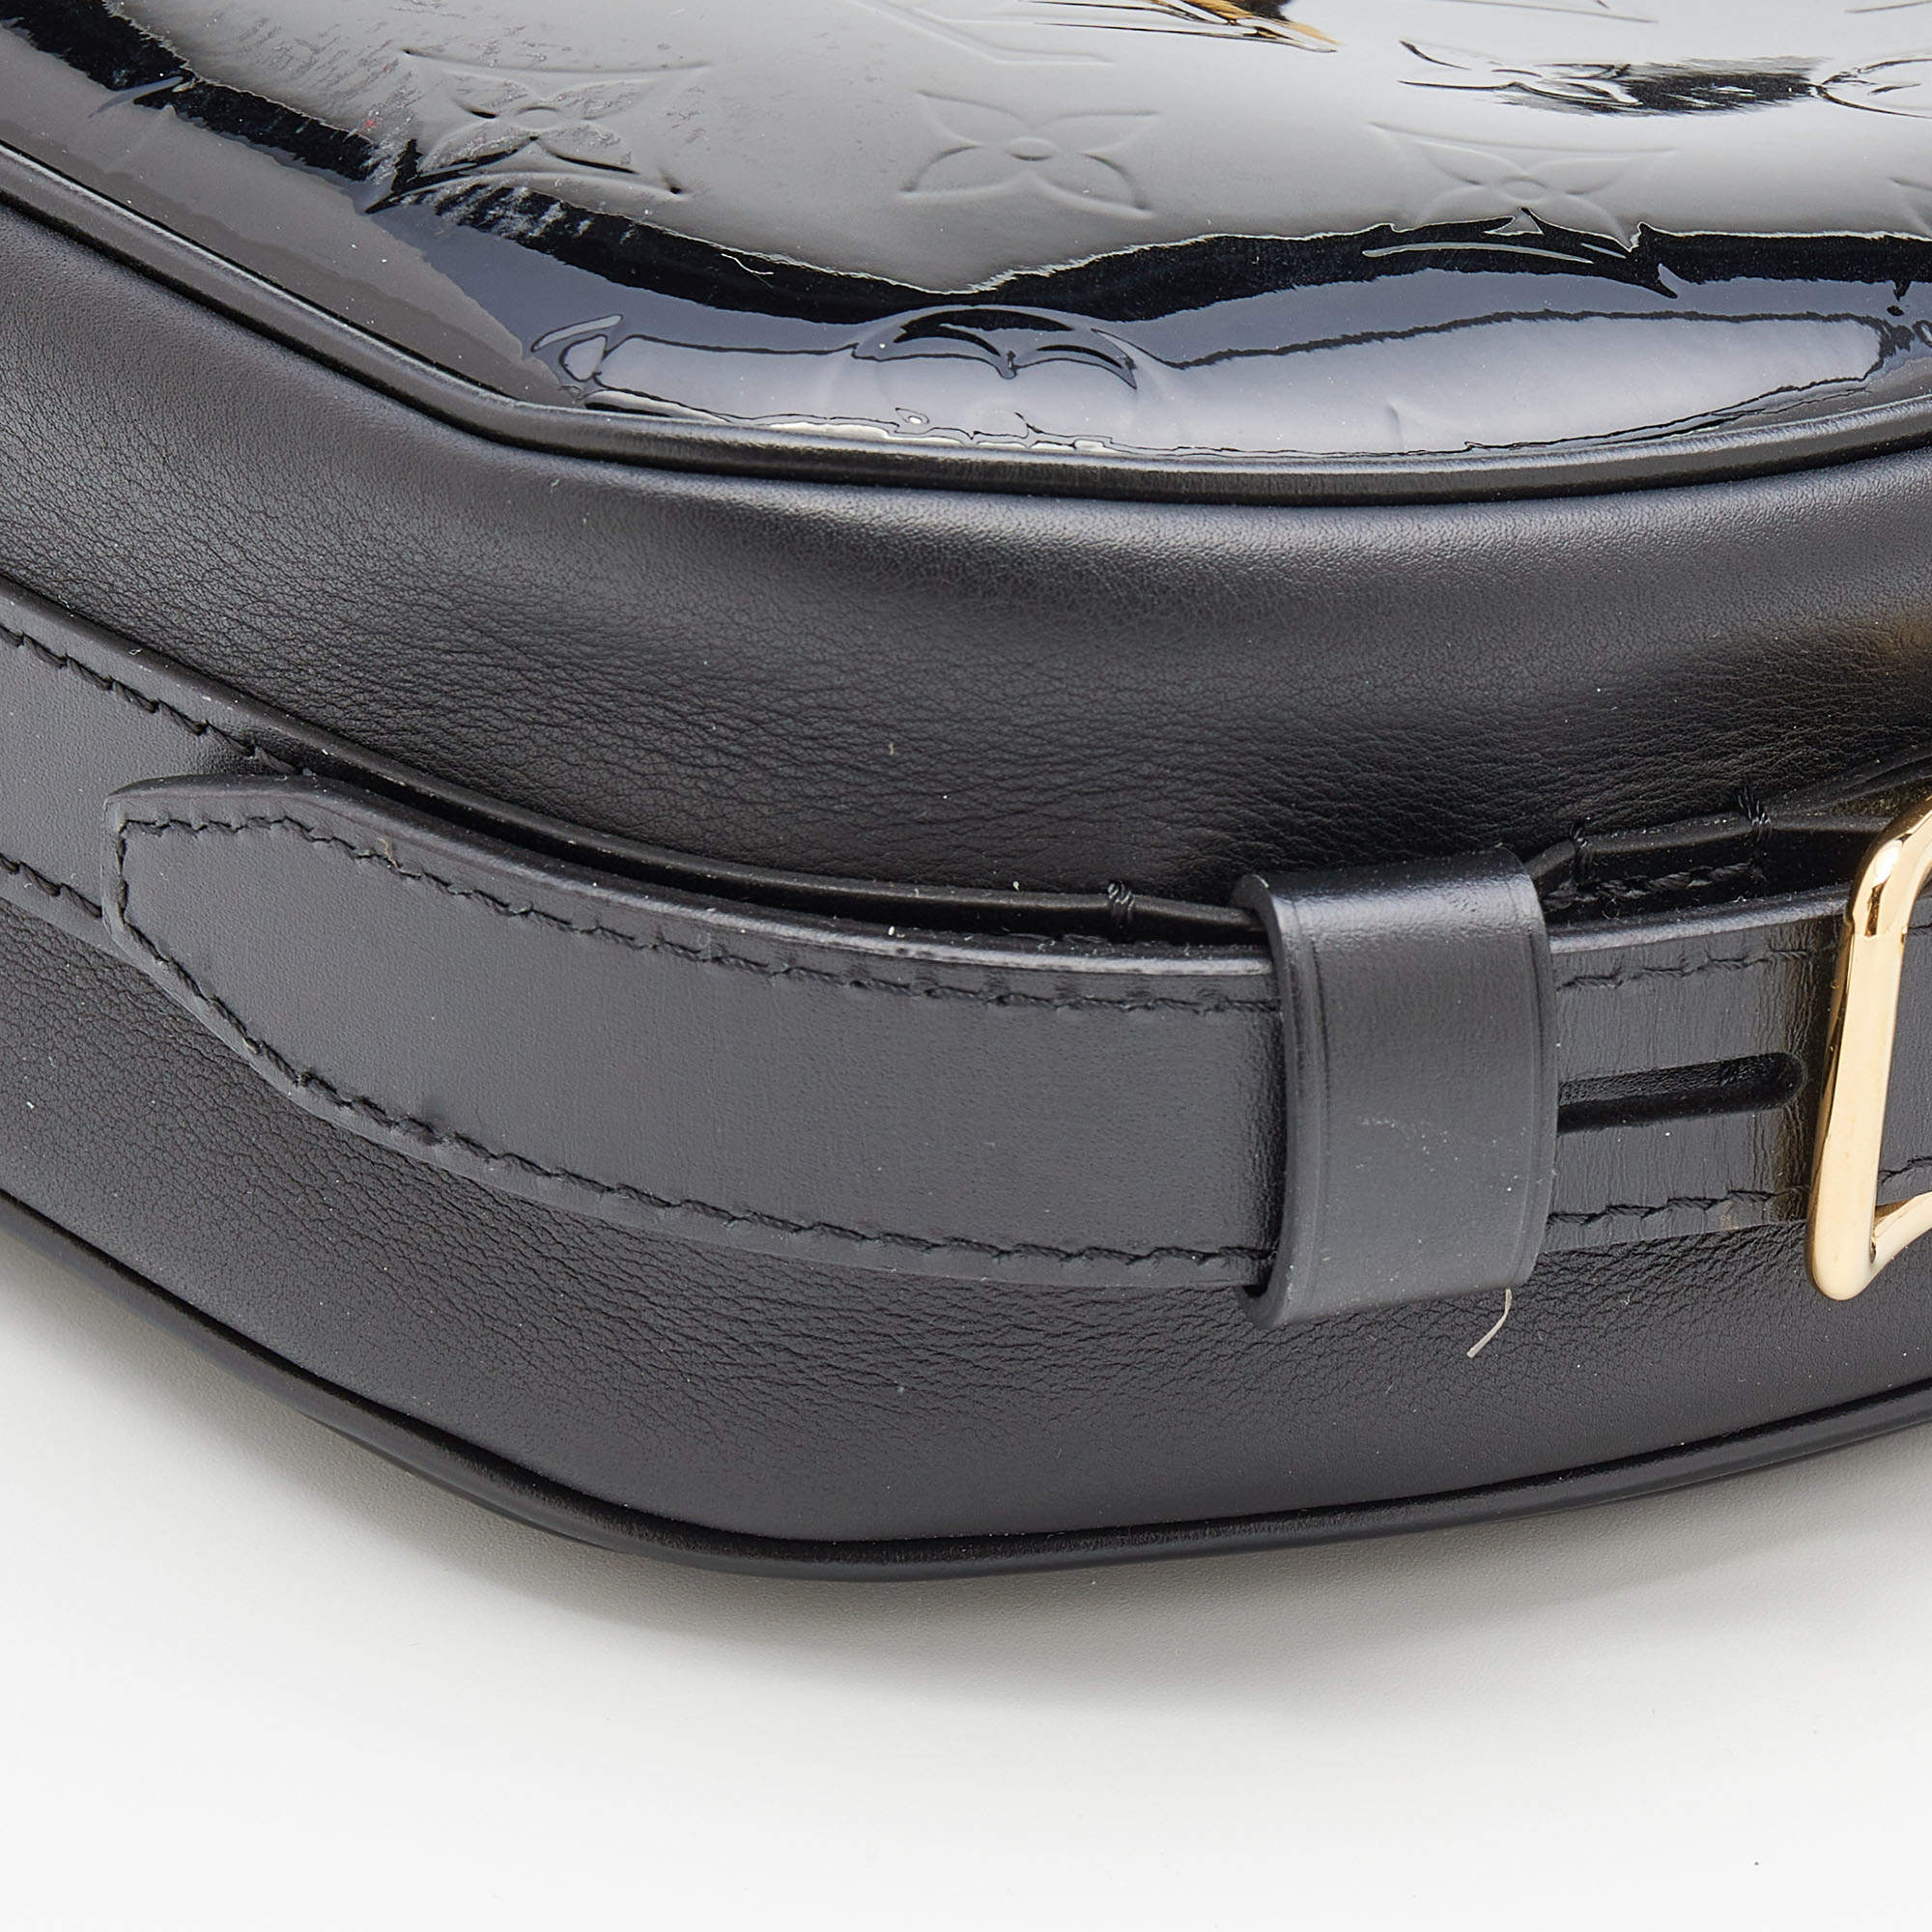 Louis Vuitton - Authenticated Boîte Chapeau Souple Handbag - Leather Black for Women, Good Condition